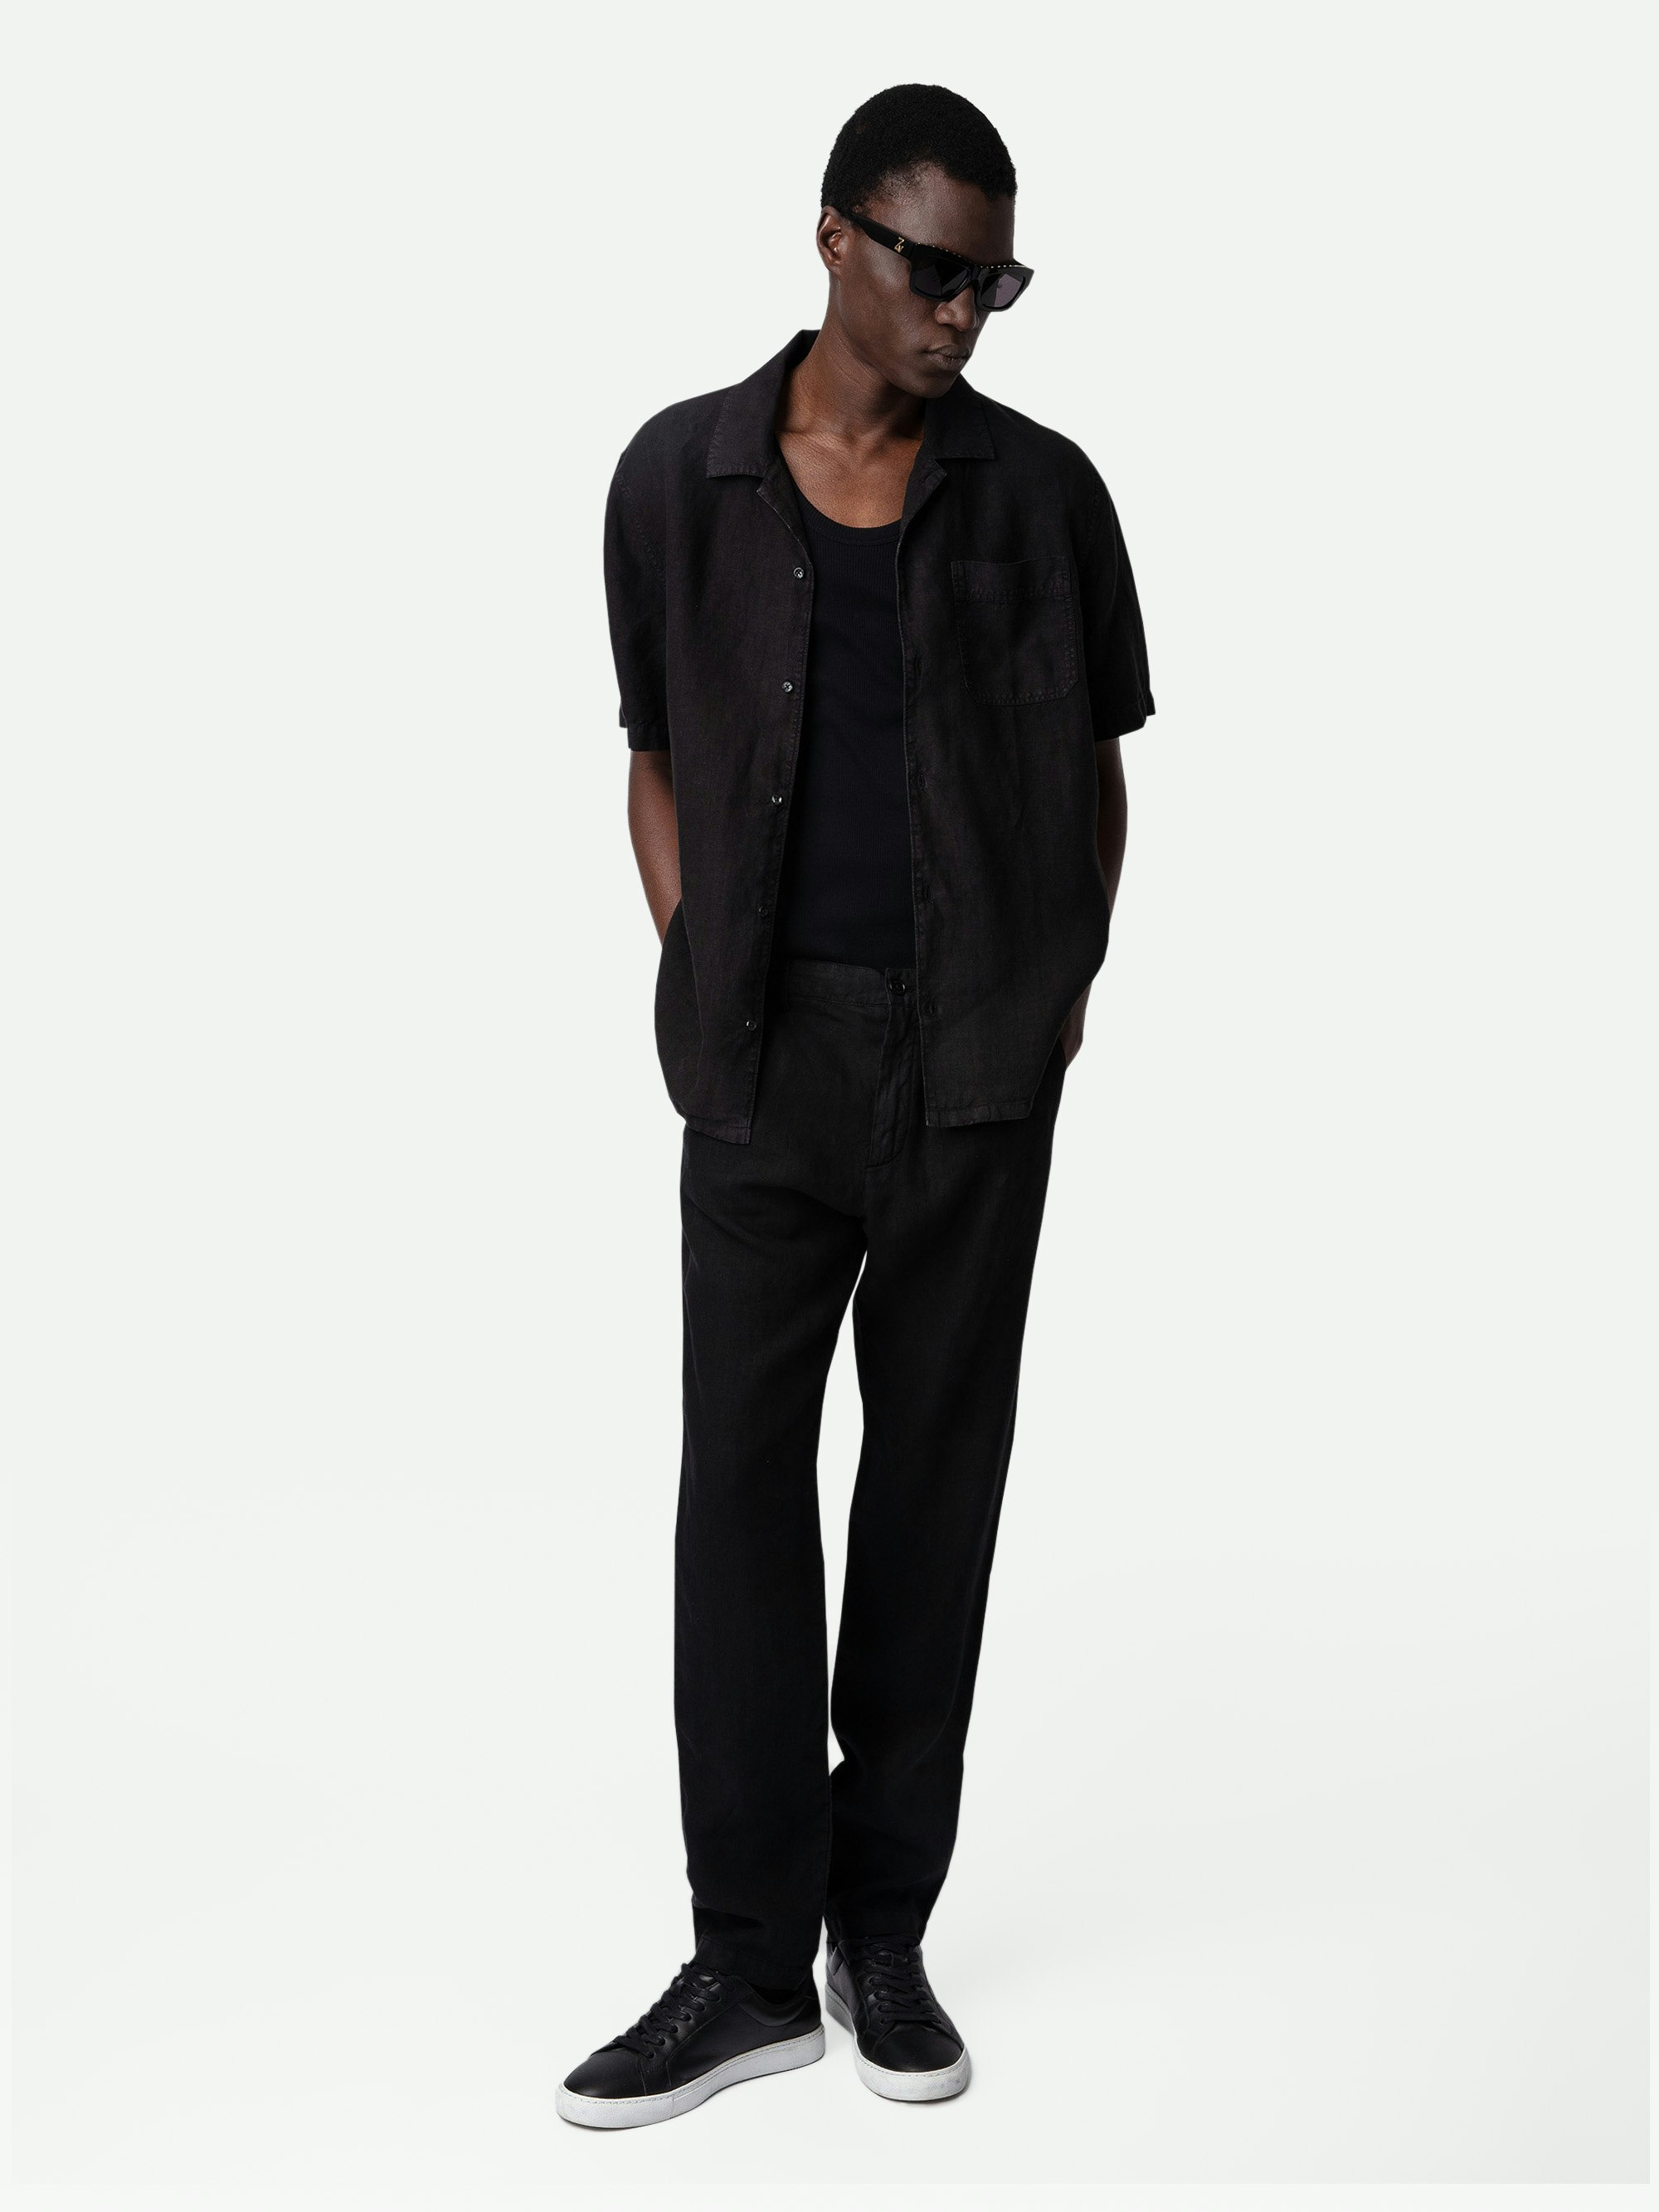 Camicia Sloan Lino - Camicia in lino nera con bottoni a maniche corte.